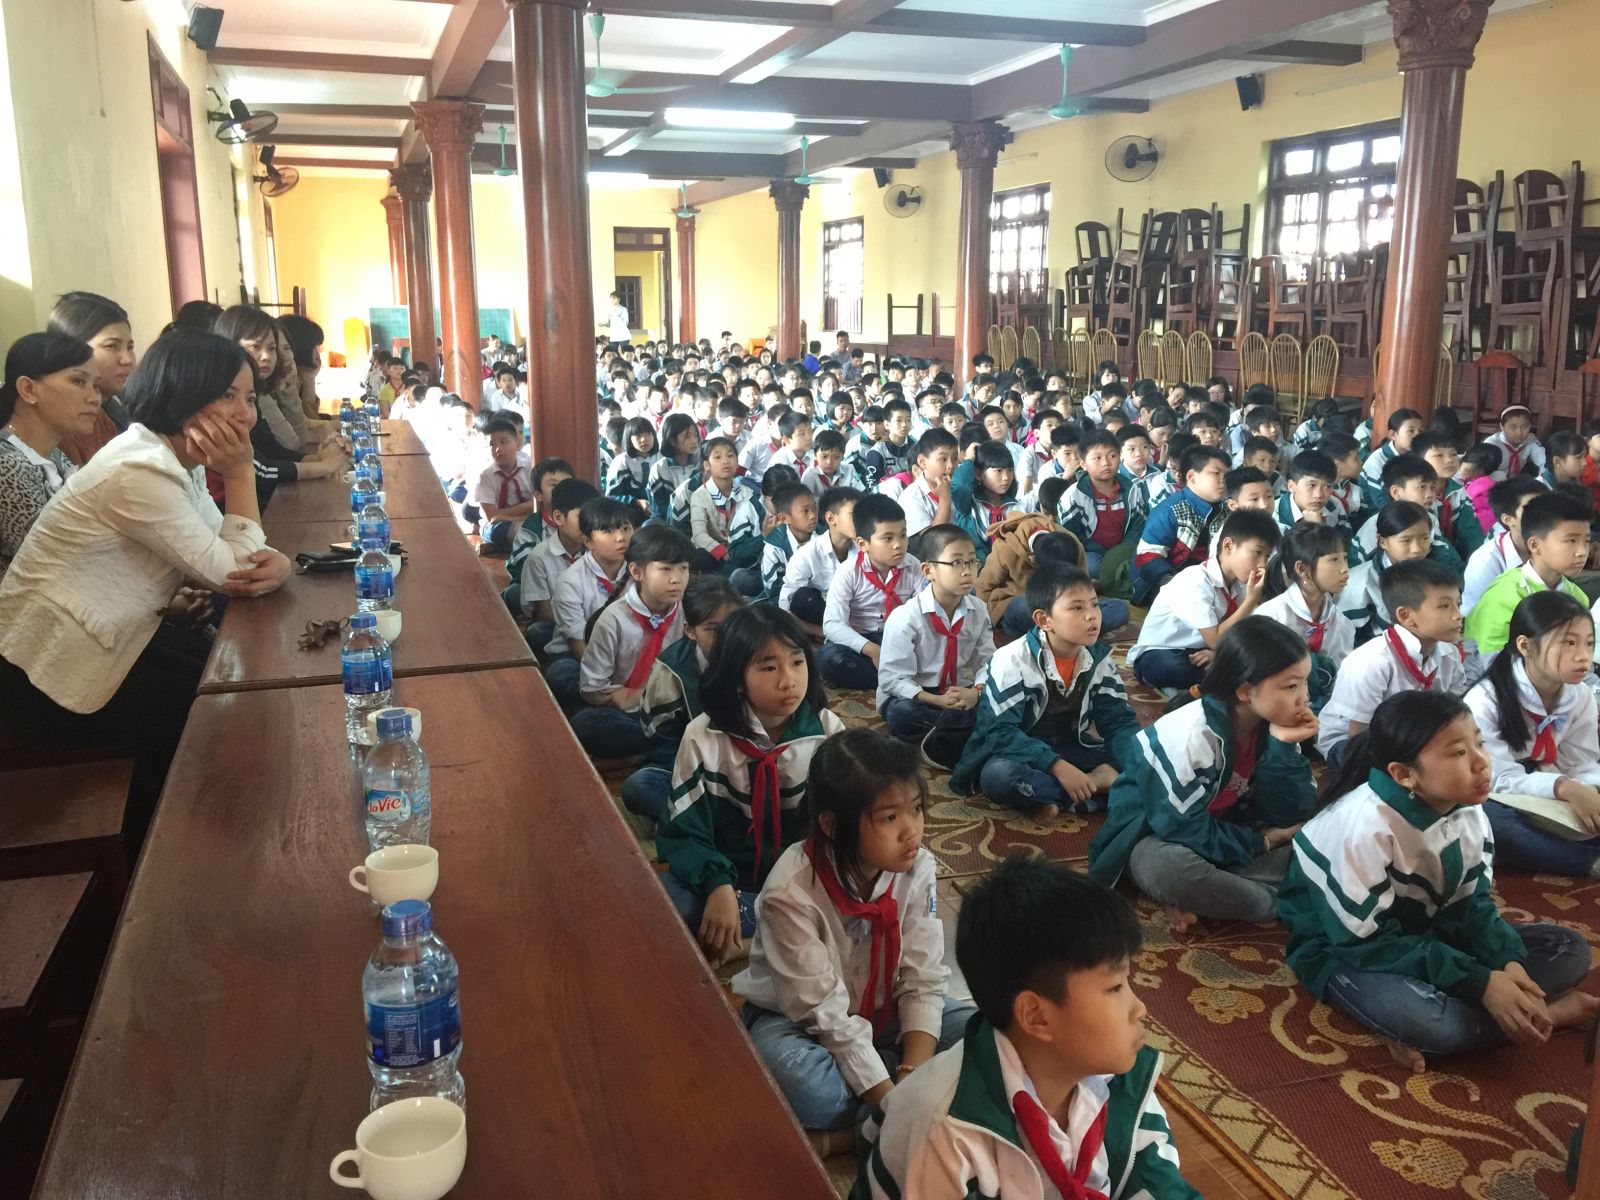 Hoạt động ngoại khóa của học sinh trường Tiểu Học Lạc Hồng tại chùa Pháp Vân ngày 15/4/2018.